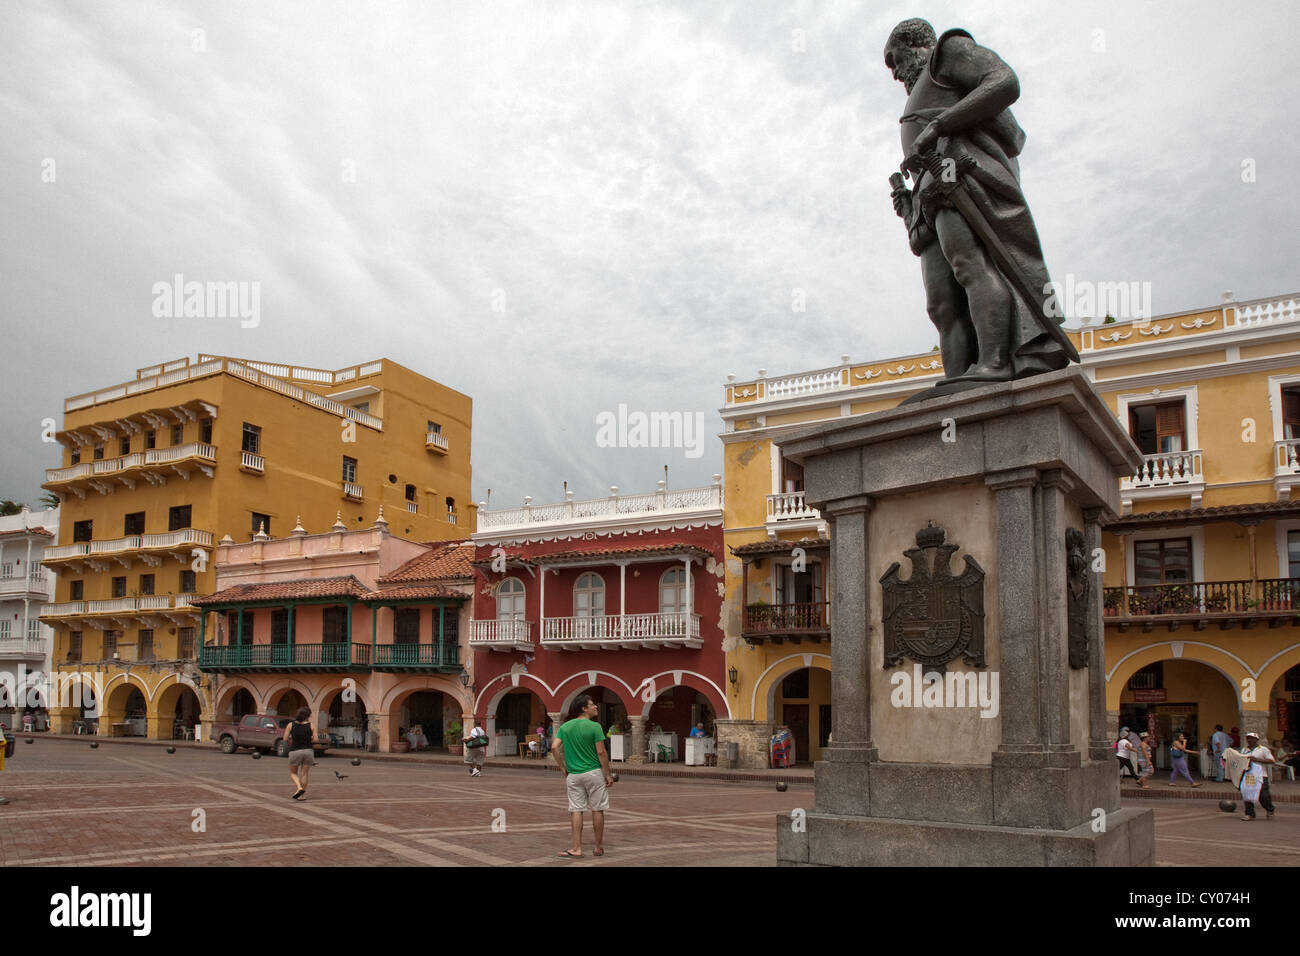 Pedro de Heredia, founder, Plaza de los Coches, Ciudad amurallada, Cartagena de Indias, Colombia Stock Photo